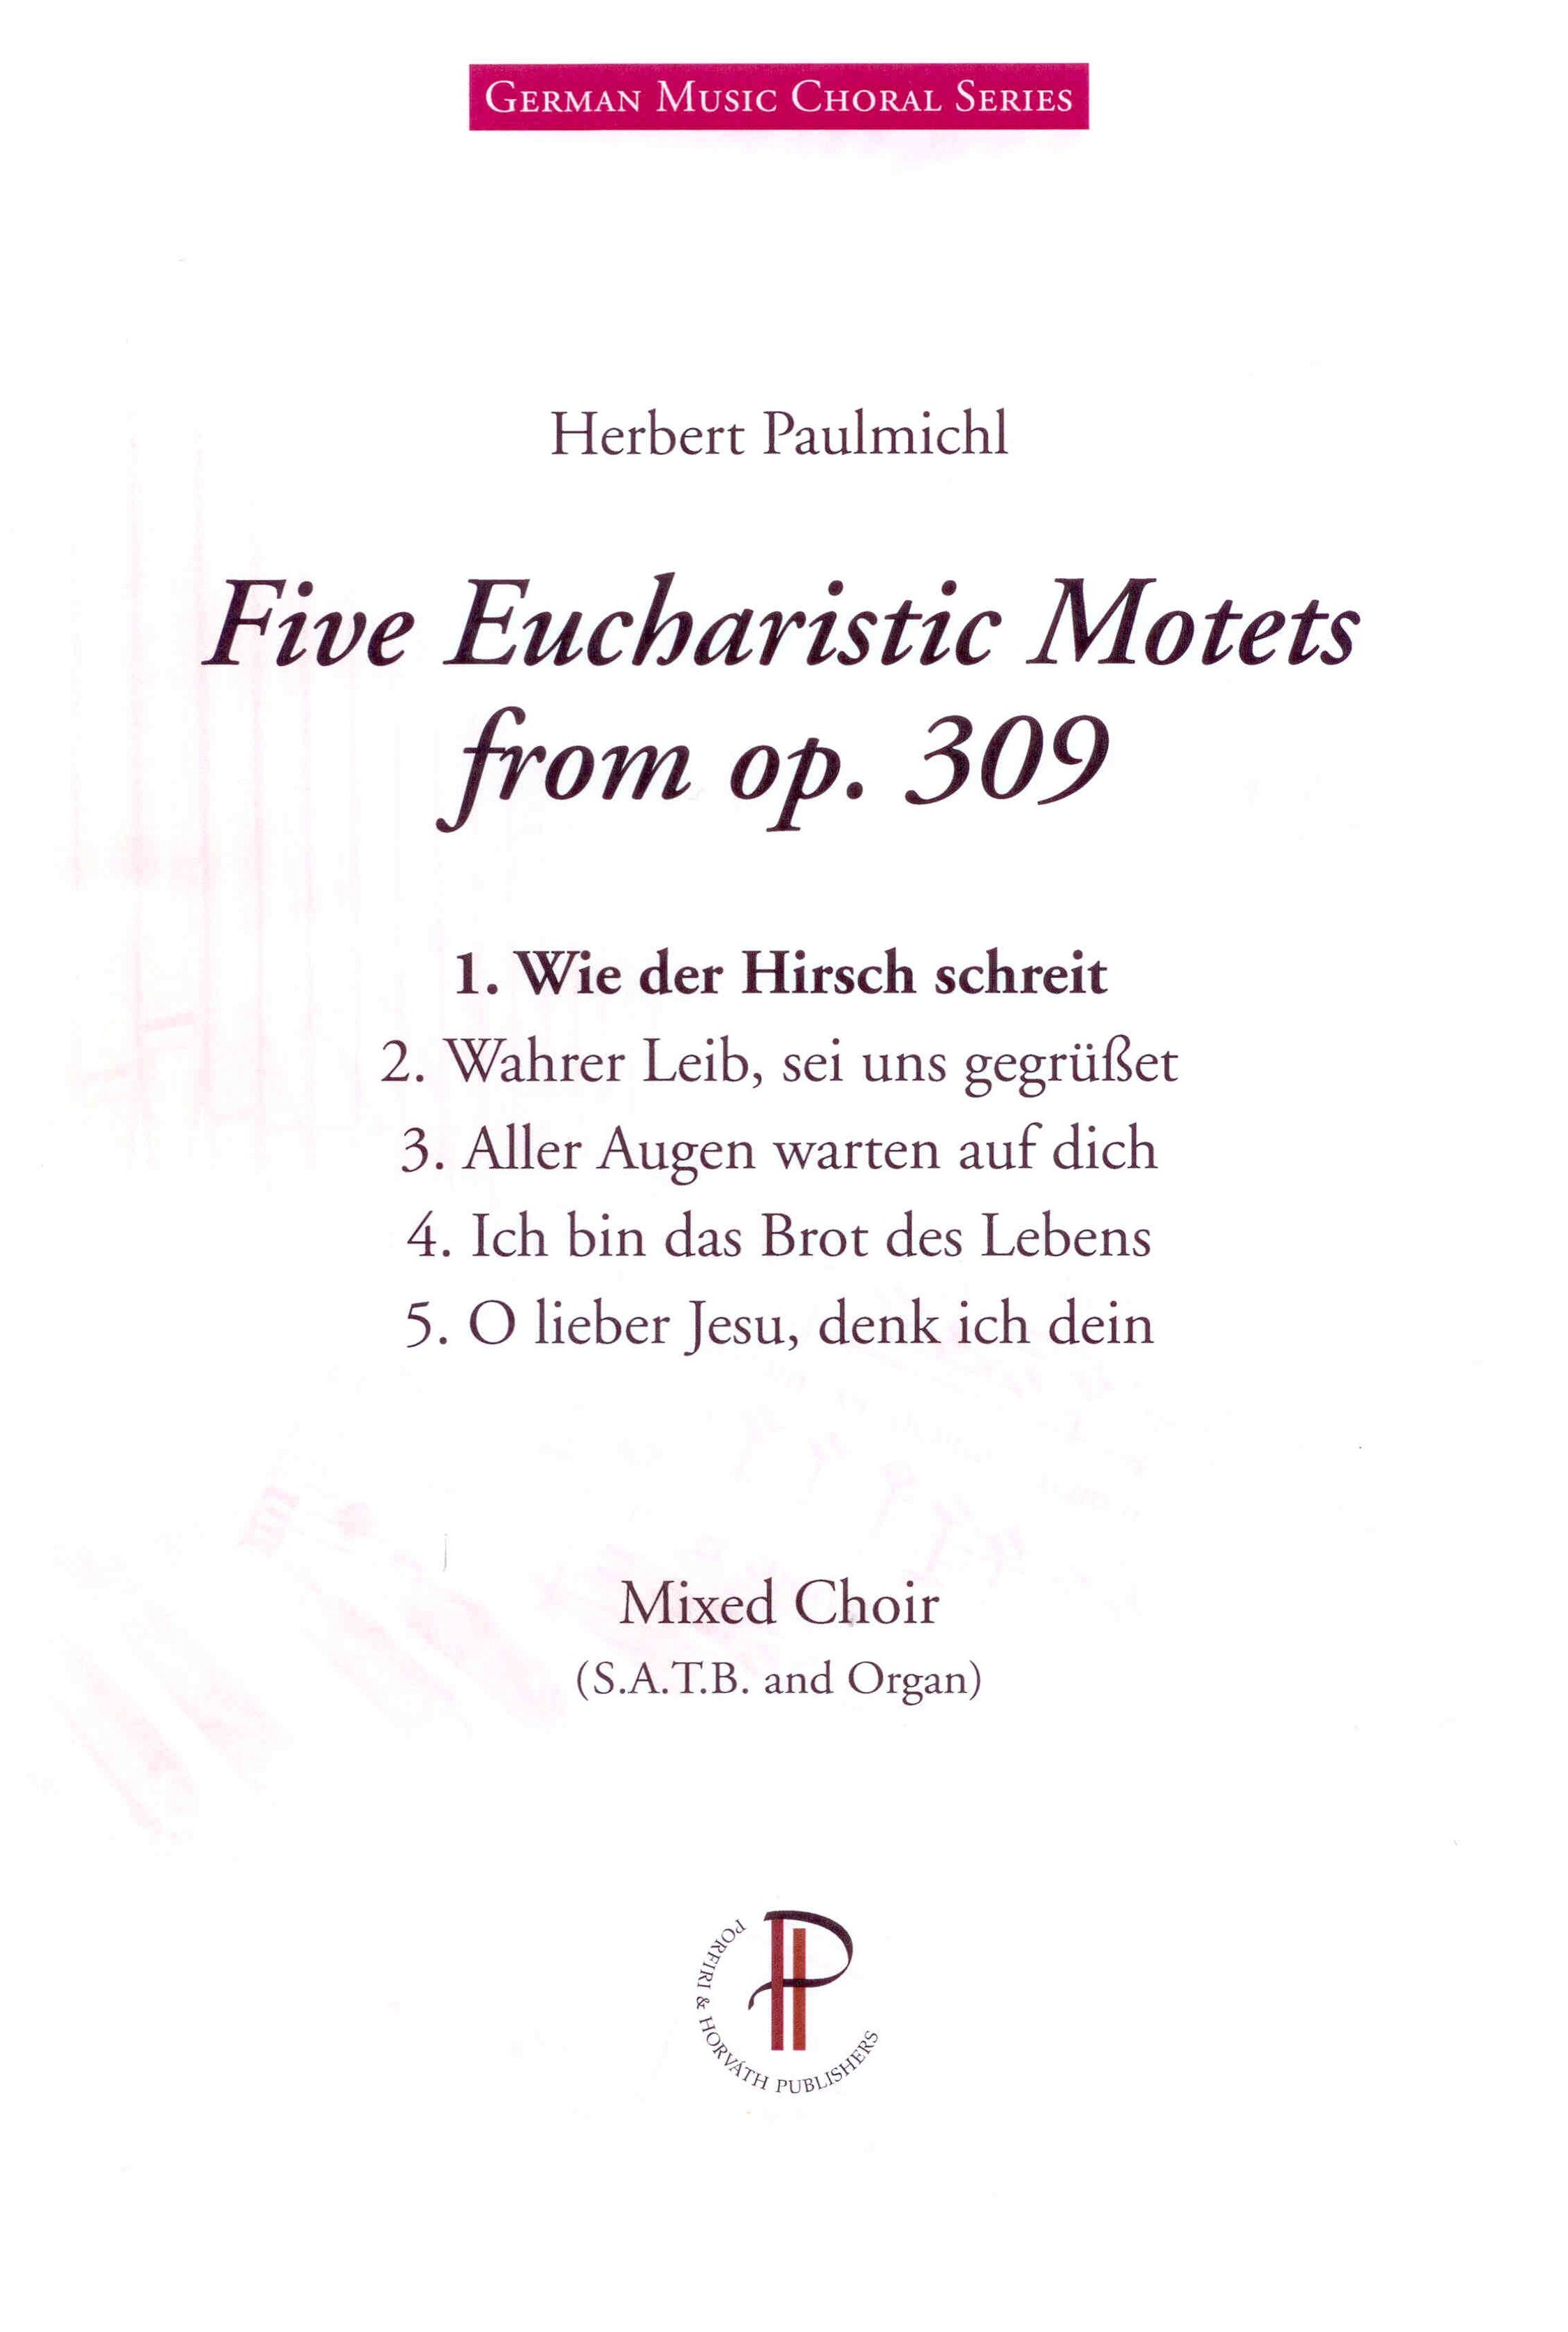 Fünf eucharistische Motetten op. 309